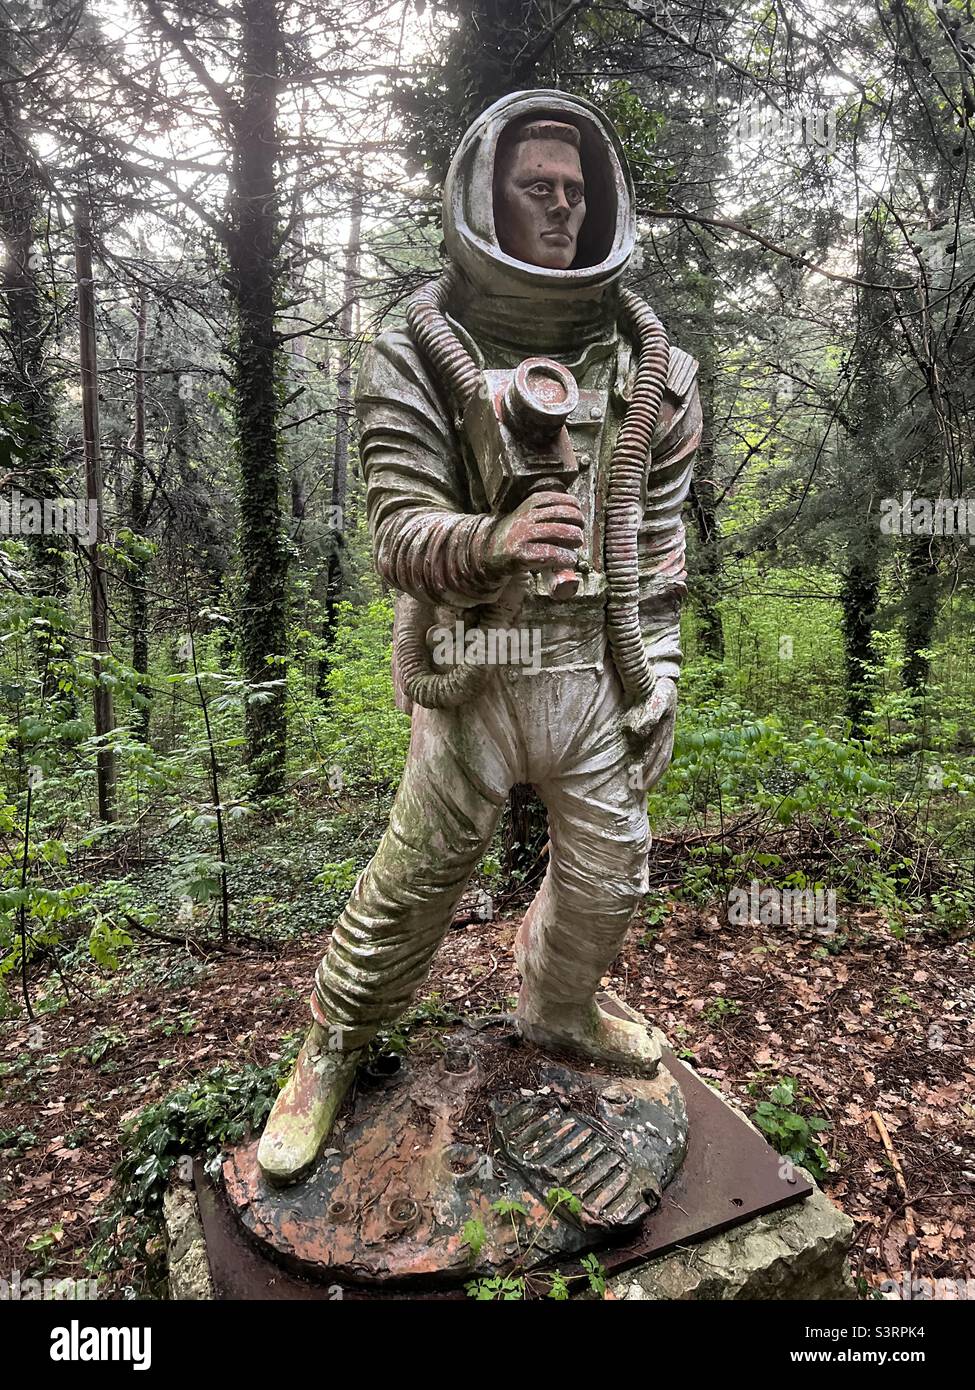 Creative astronaut statue in a garden Stock Photo